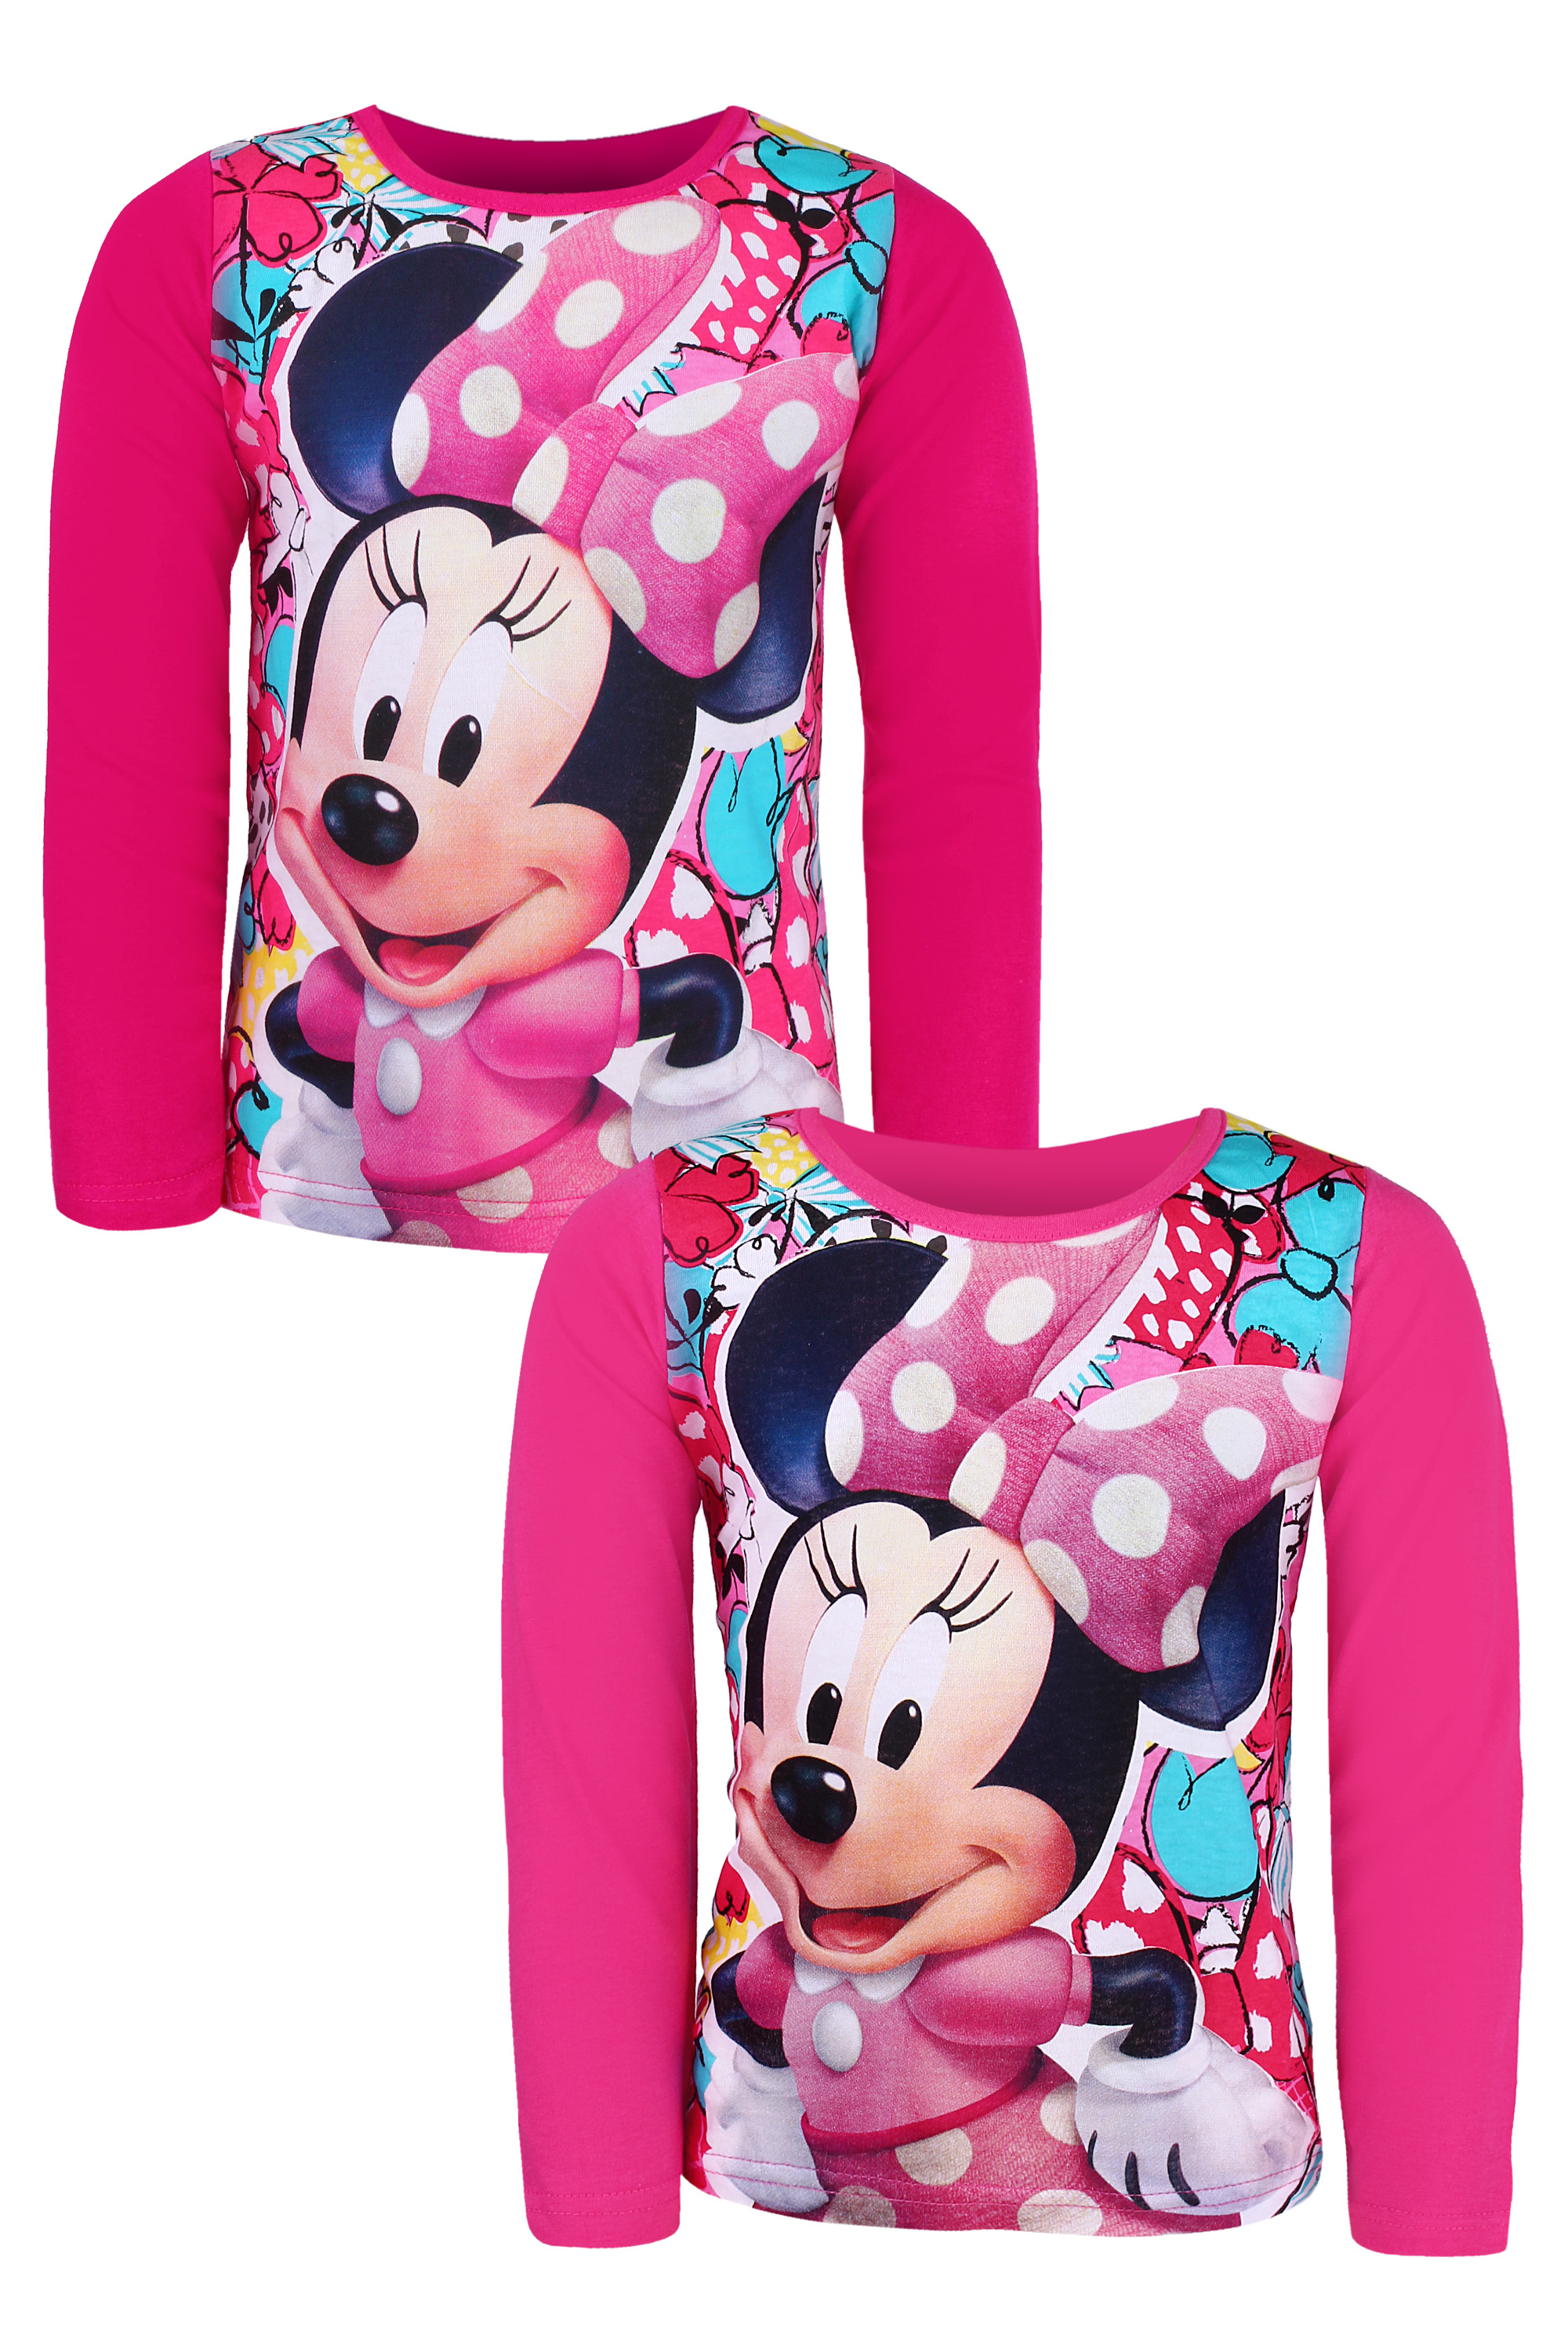 Minnie Mouse - licence Dívčí triko - SETINO Minnie ST-71, růžová Barva: Růžová tmavší, Velikost: 98